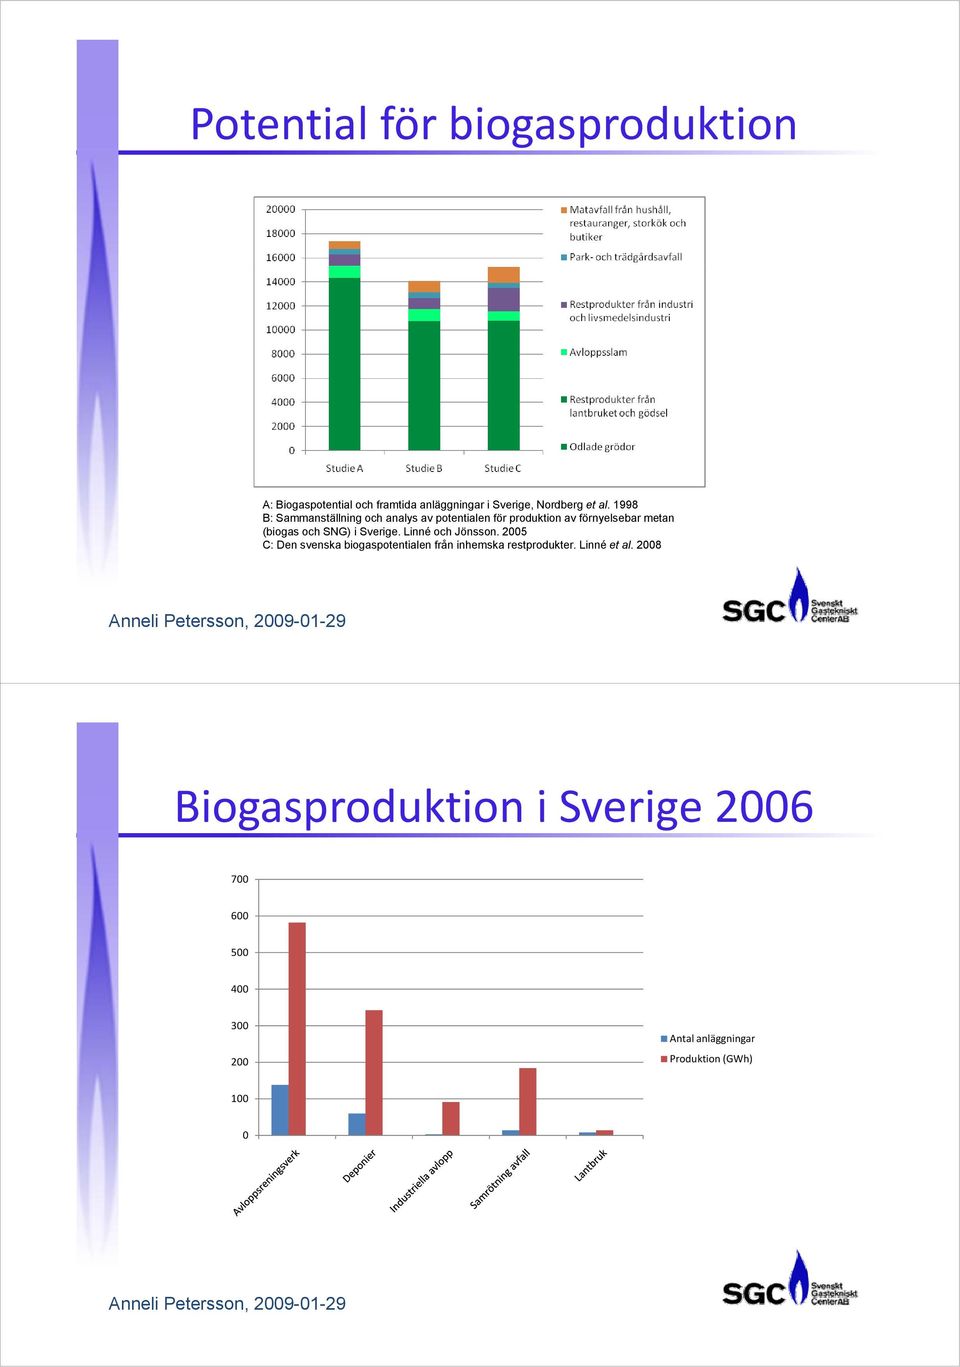 Linné och Jönsson. 2005 C: Den svenska biogaspotentialen från inhemska restprodukter. Linné et al.